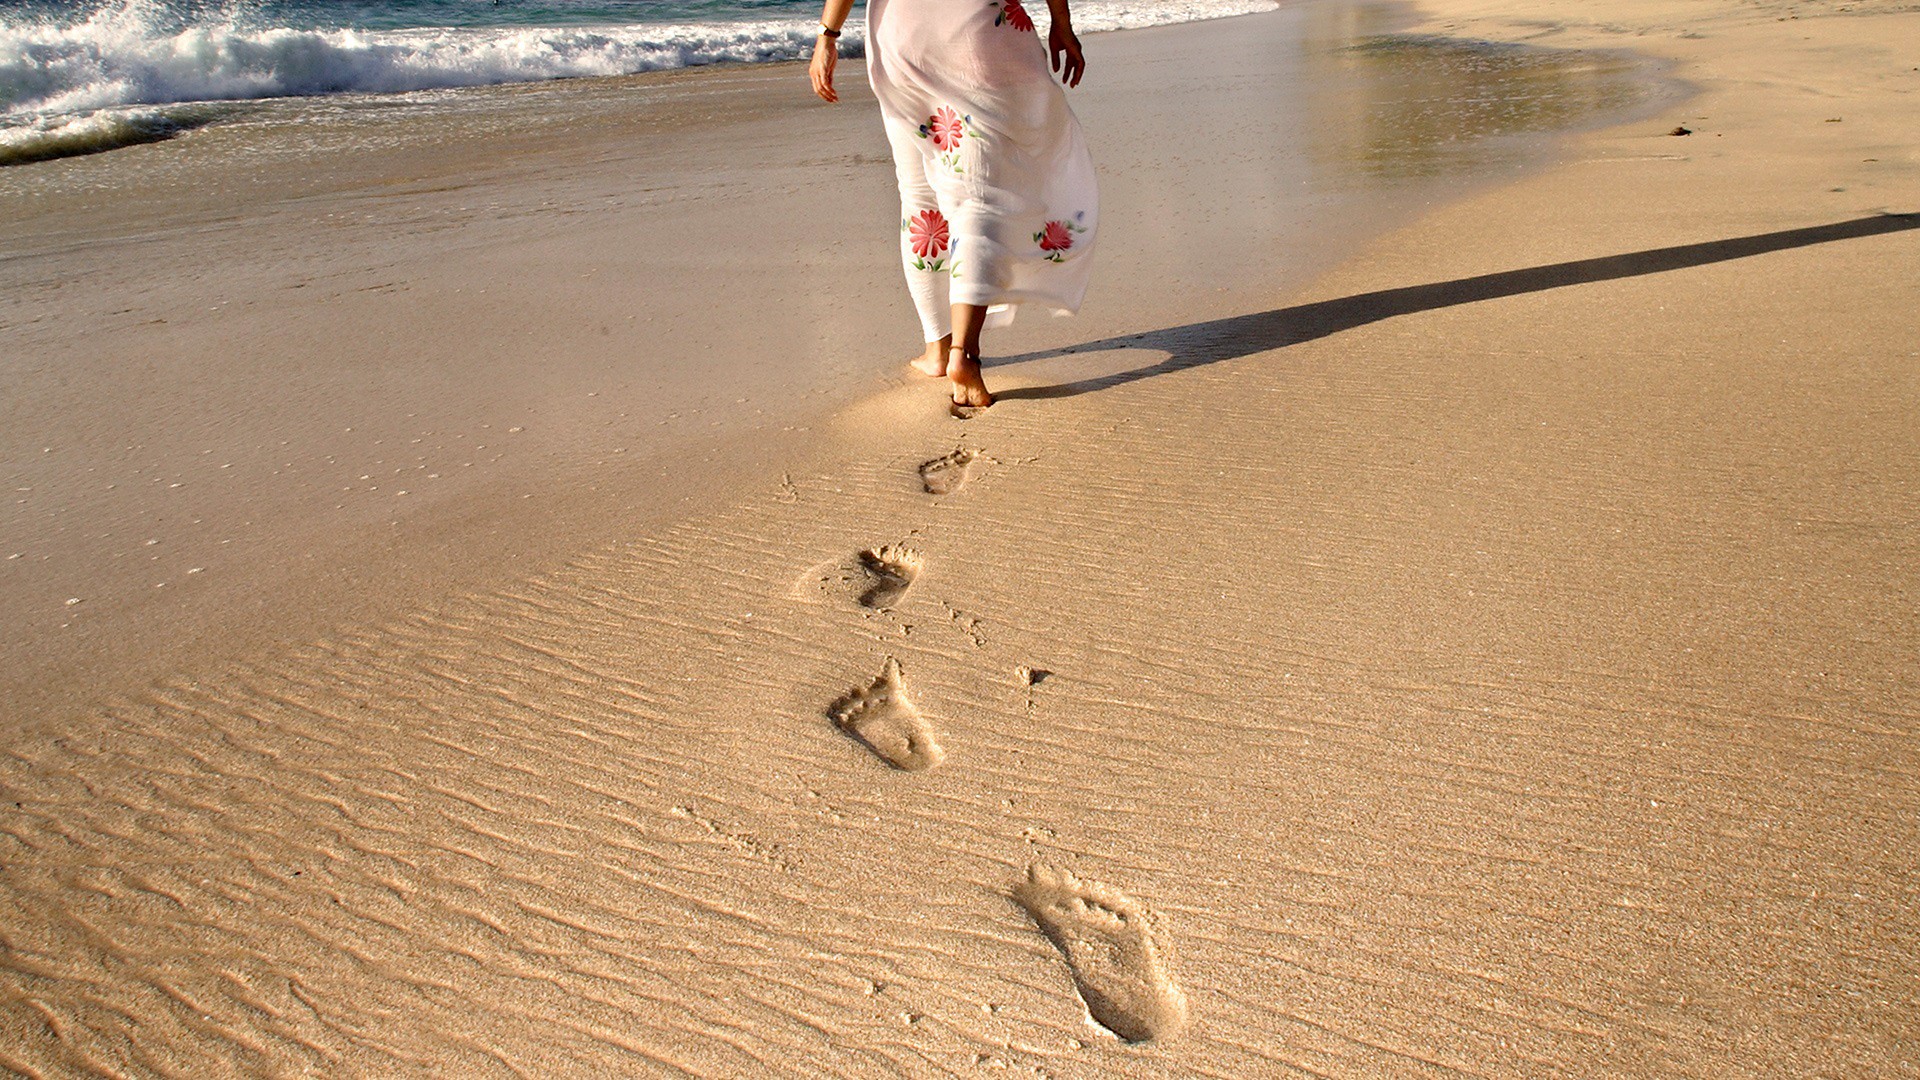 General 1920x1080 footprints beach sand shoreline skirt women outdoors dress summer dress women on beach barefoot